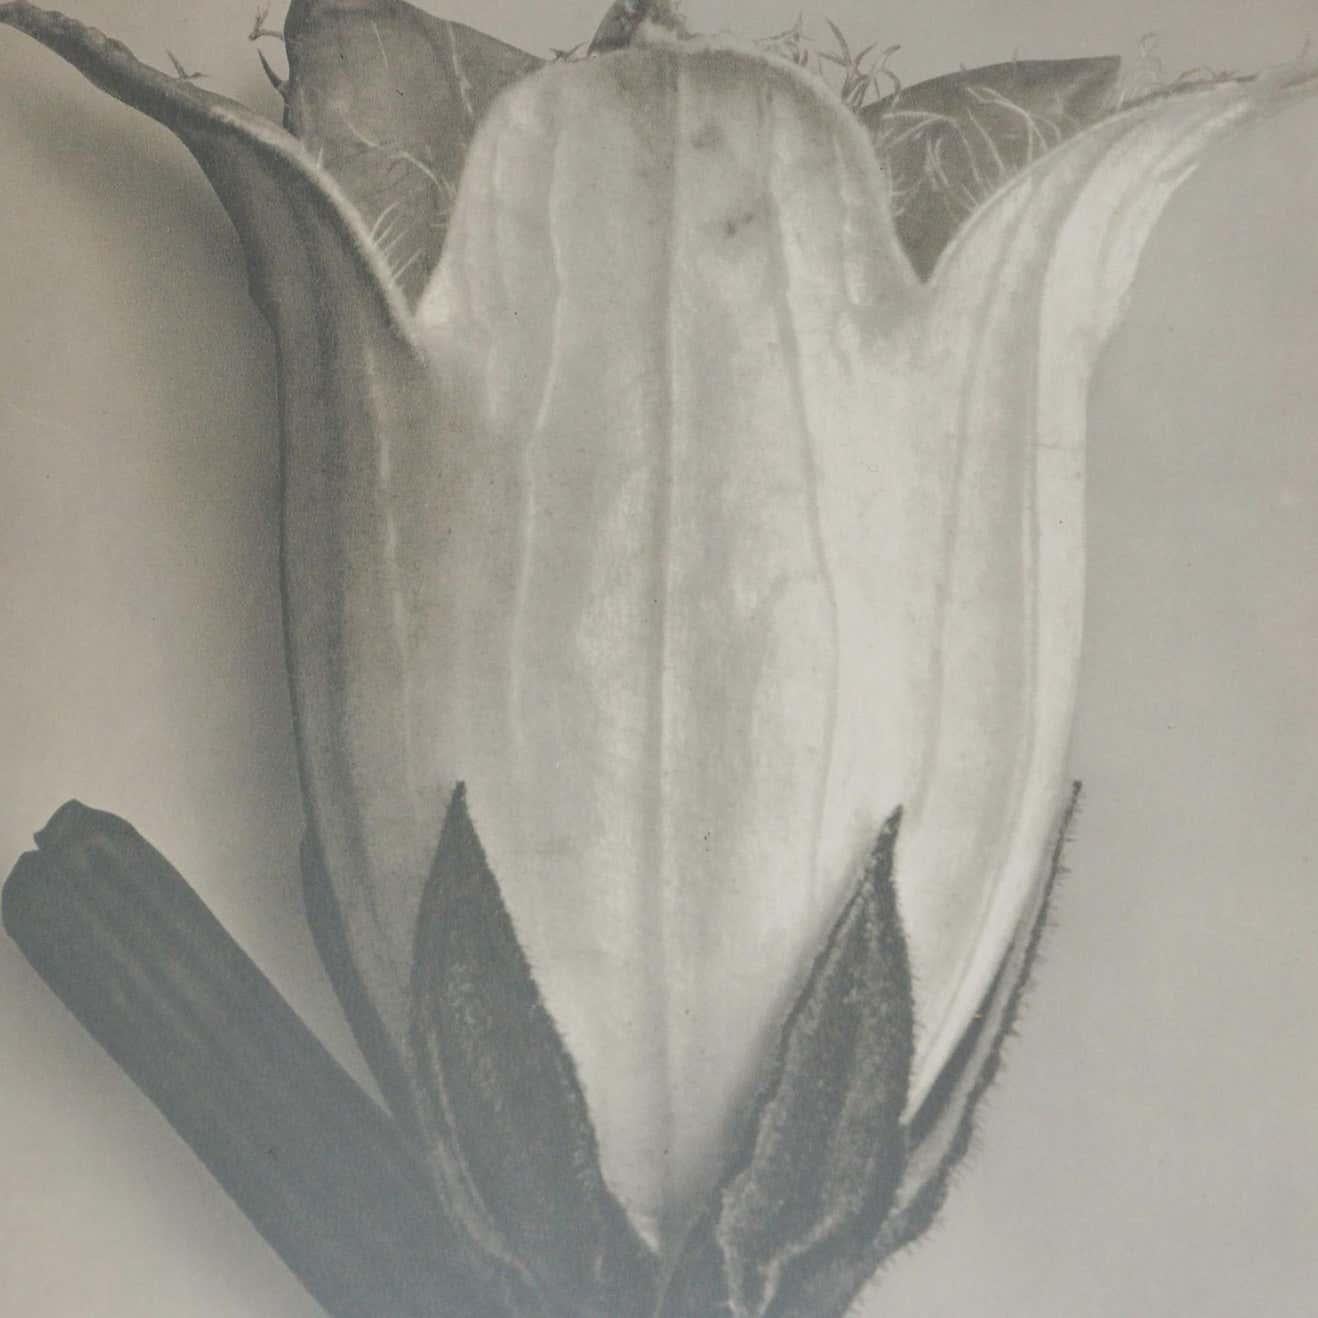 Set of 6 Karl Blossfeldt Black White Flower Photogravure Botanic Photographies 3